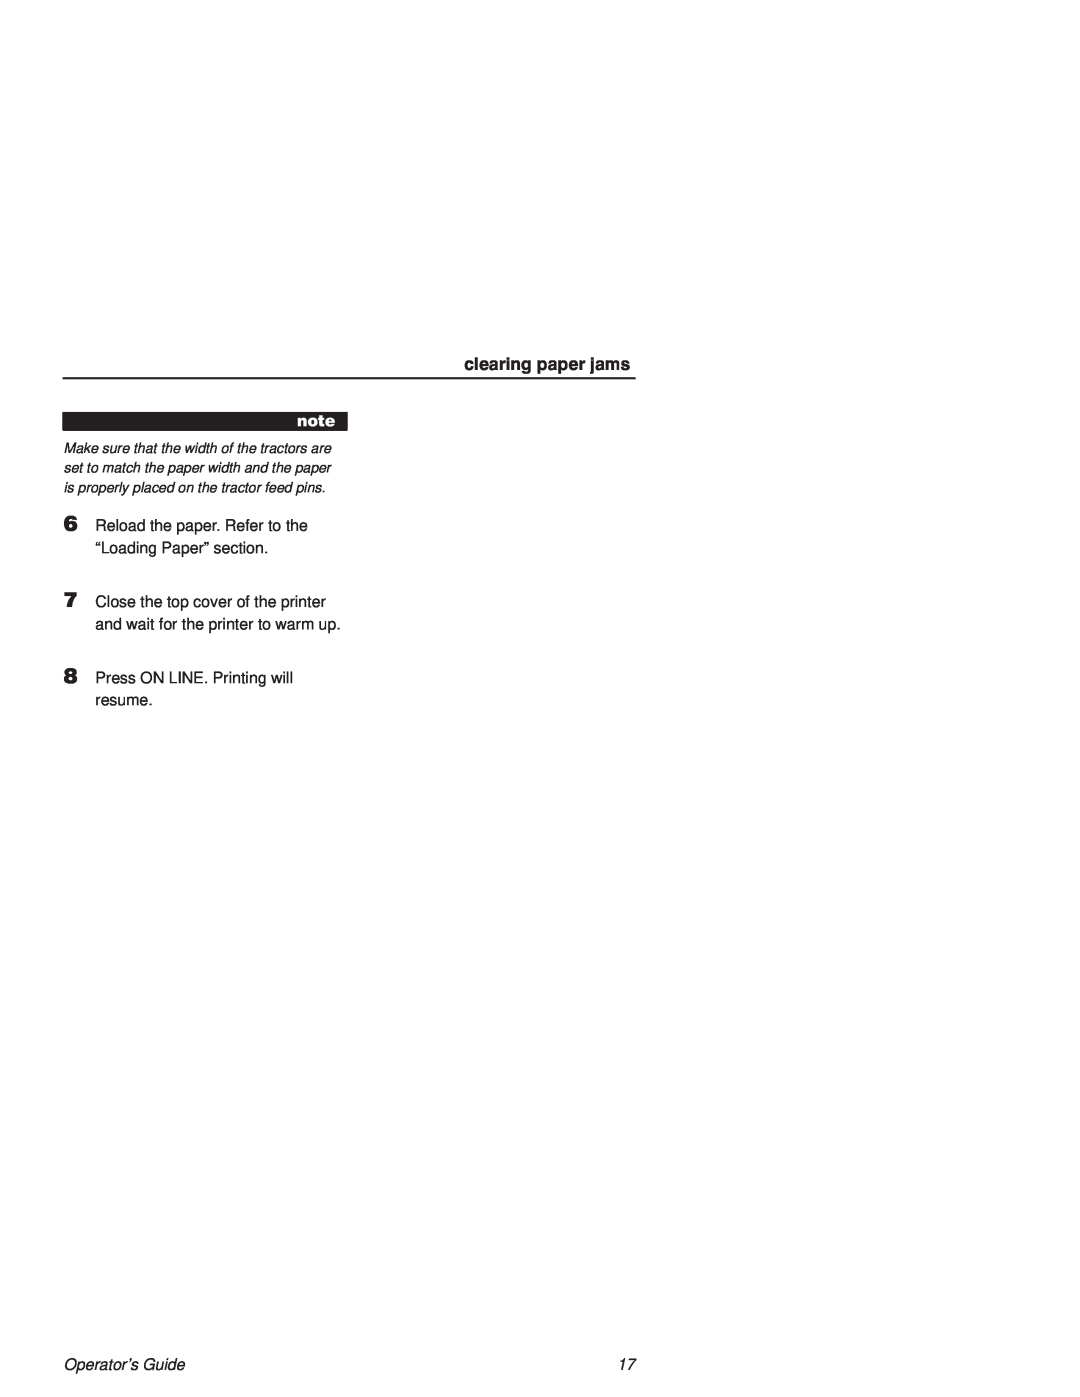 Printronix L1524 manual clearing paper jams, Operators Guide 